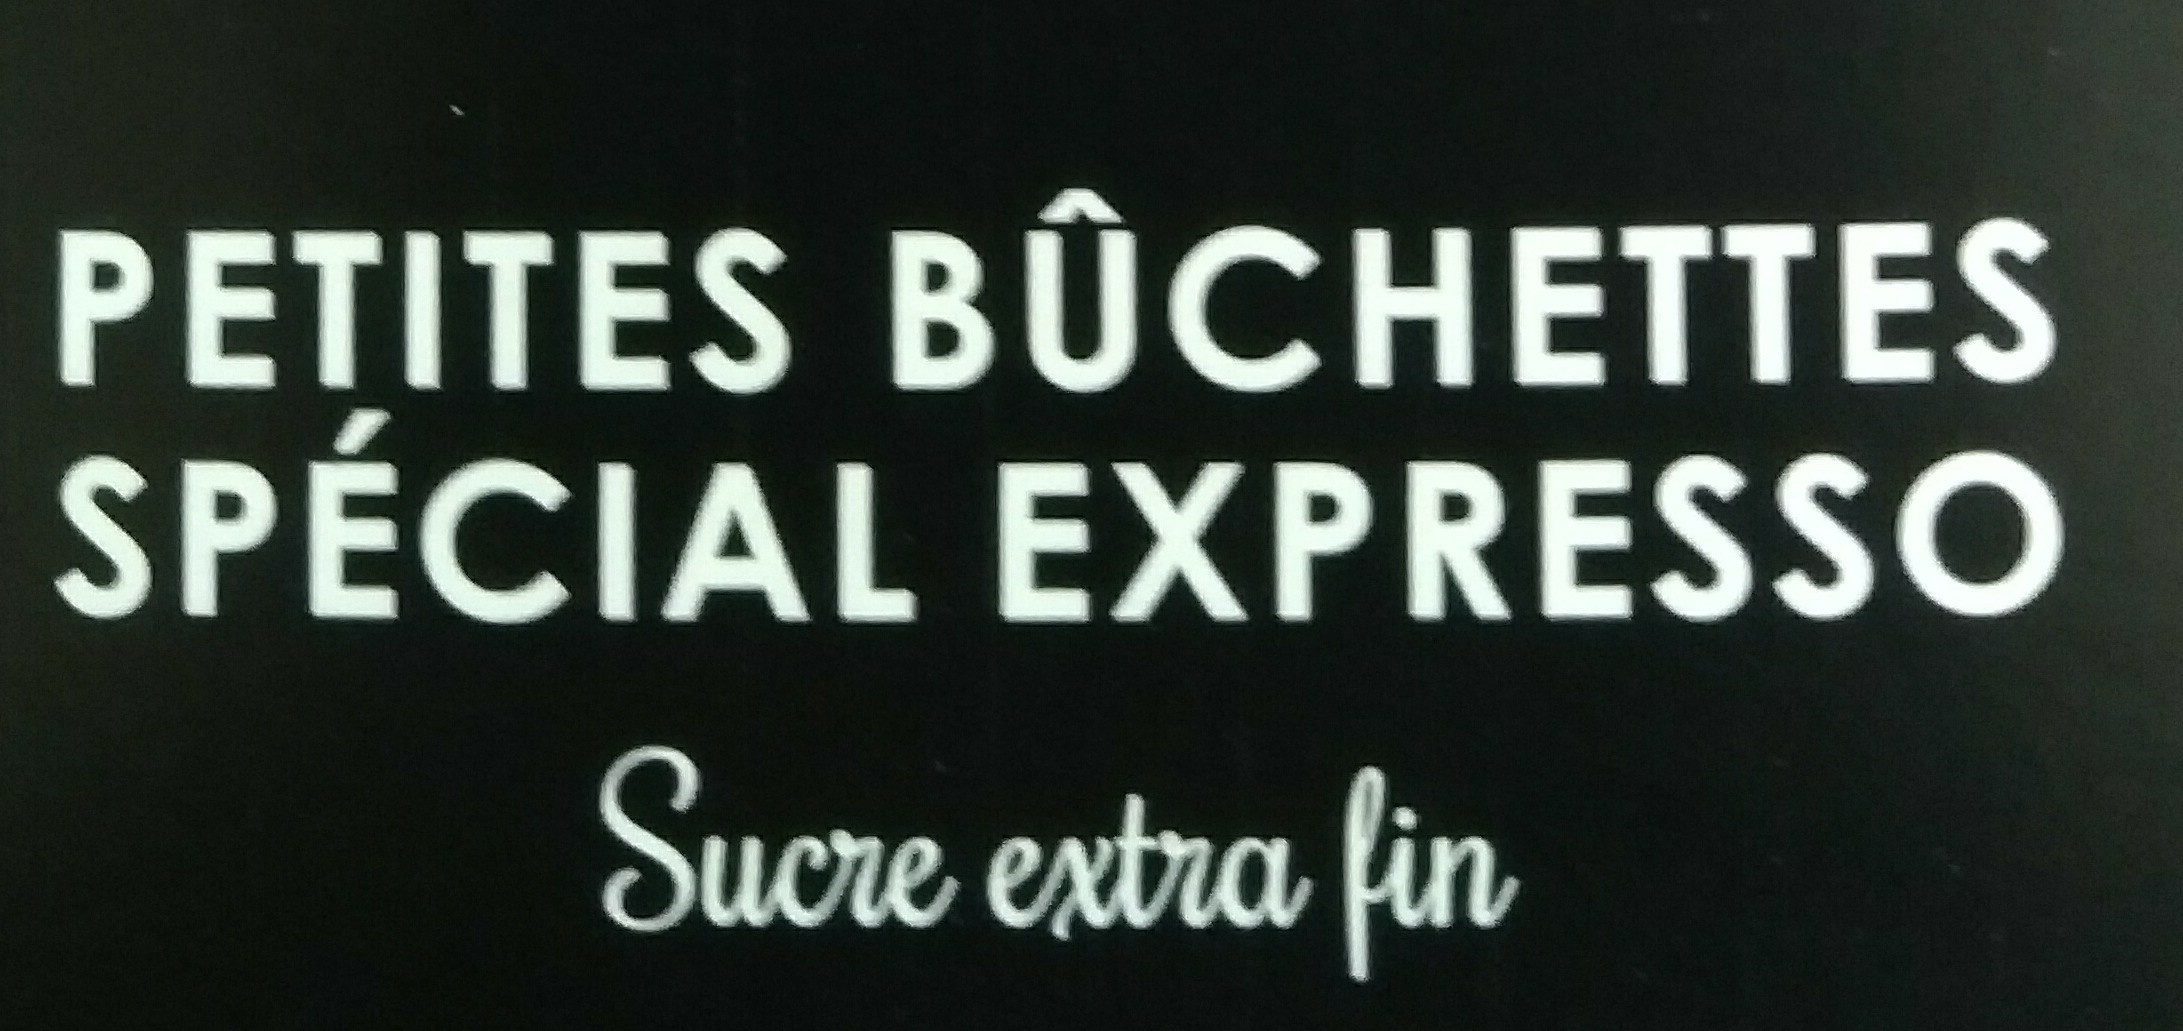 Buchettes special expresso bte 300g - Ingrediënten - fr